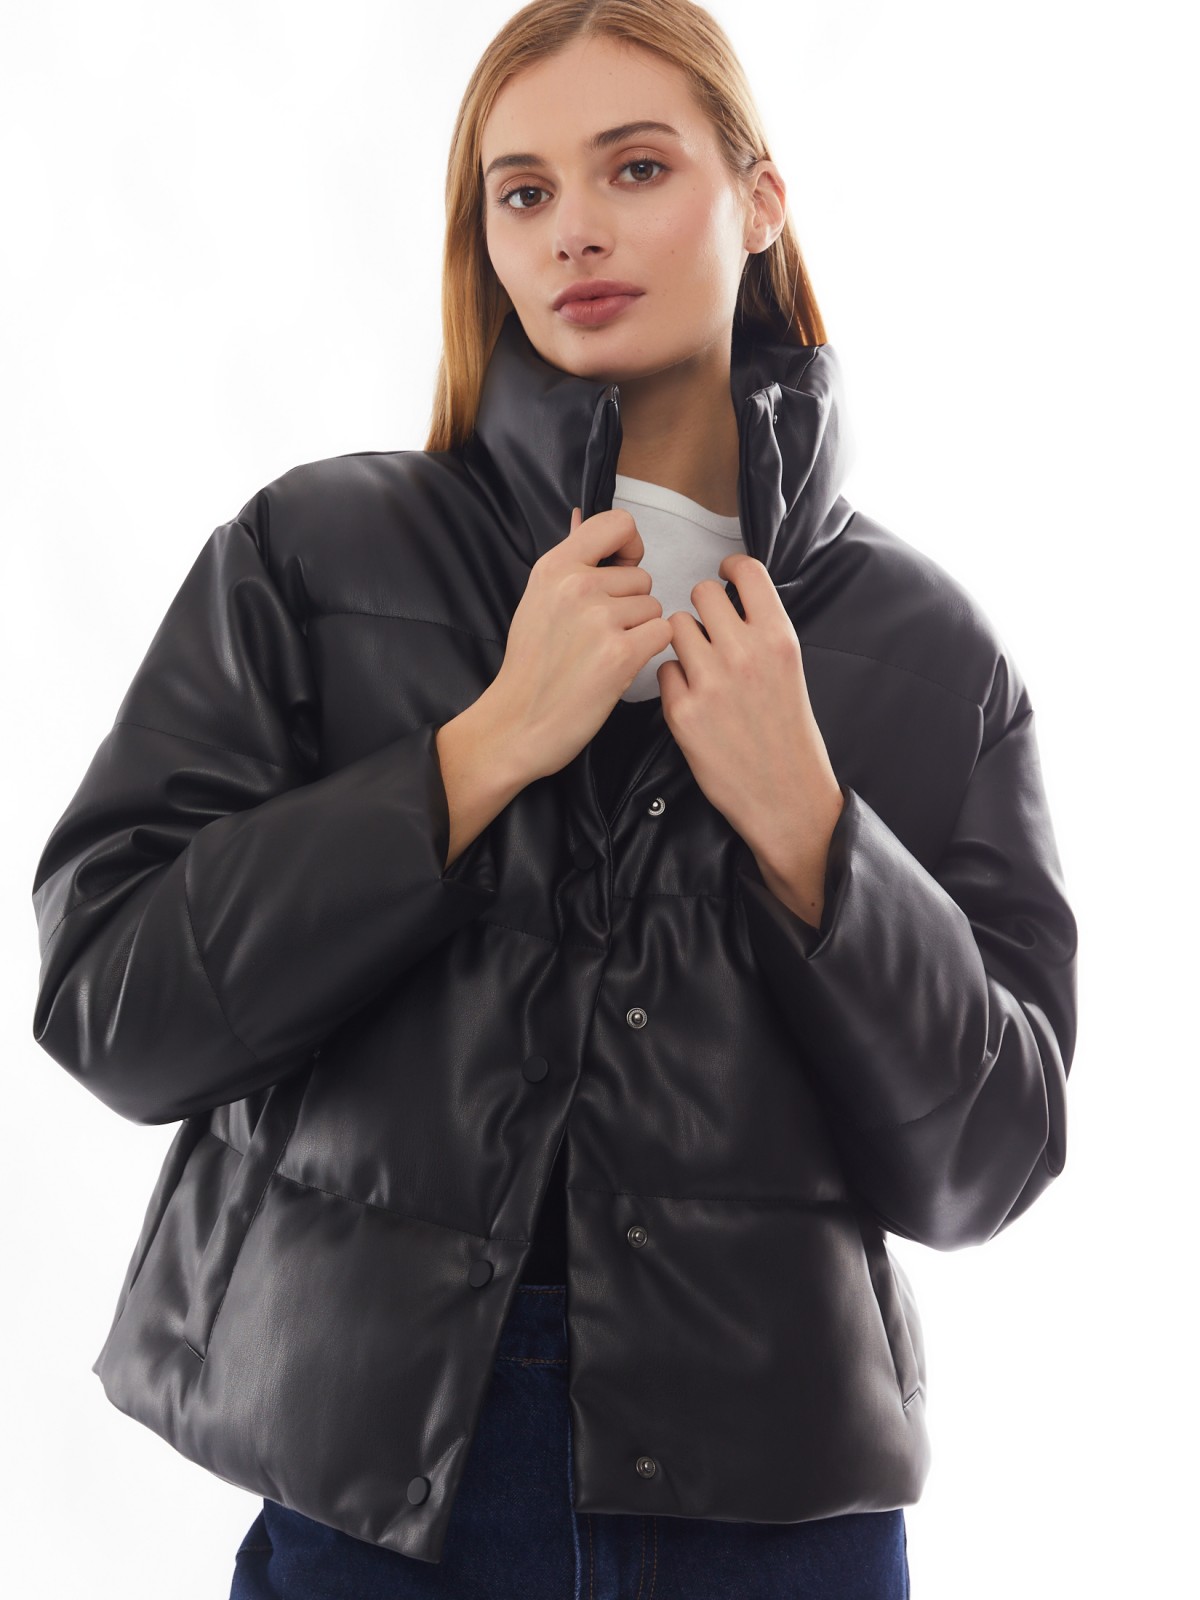 Тёплая стёганая дутая куртка из экокожи с высоким воротником zolla 02412516F034, цвет черный, размер XS - фото 1